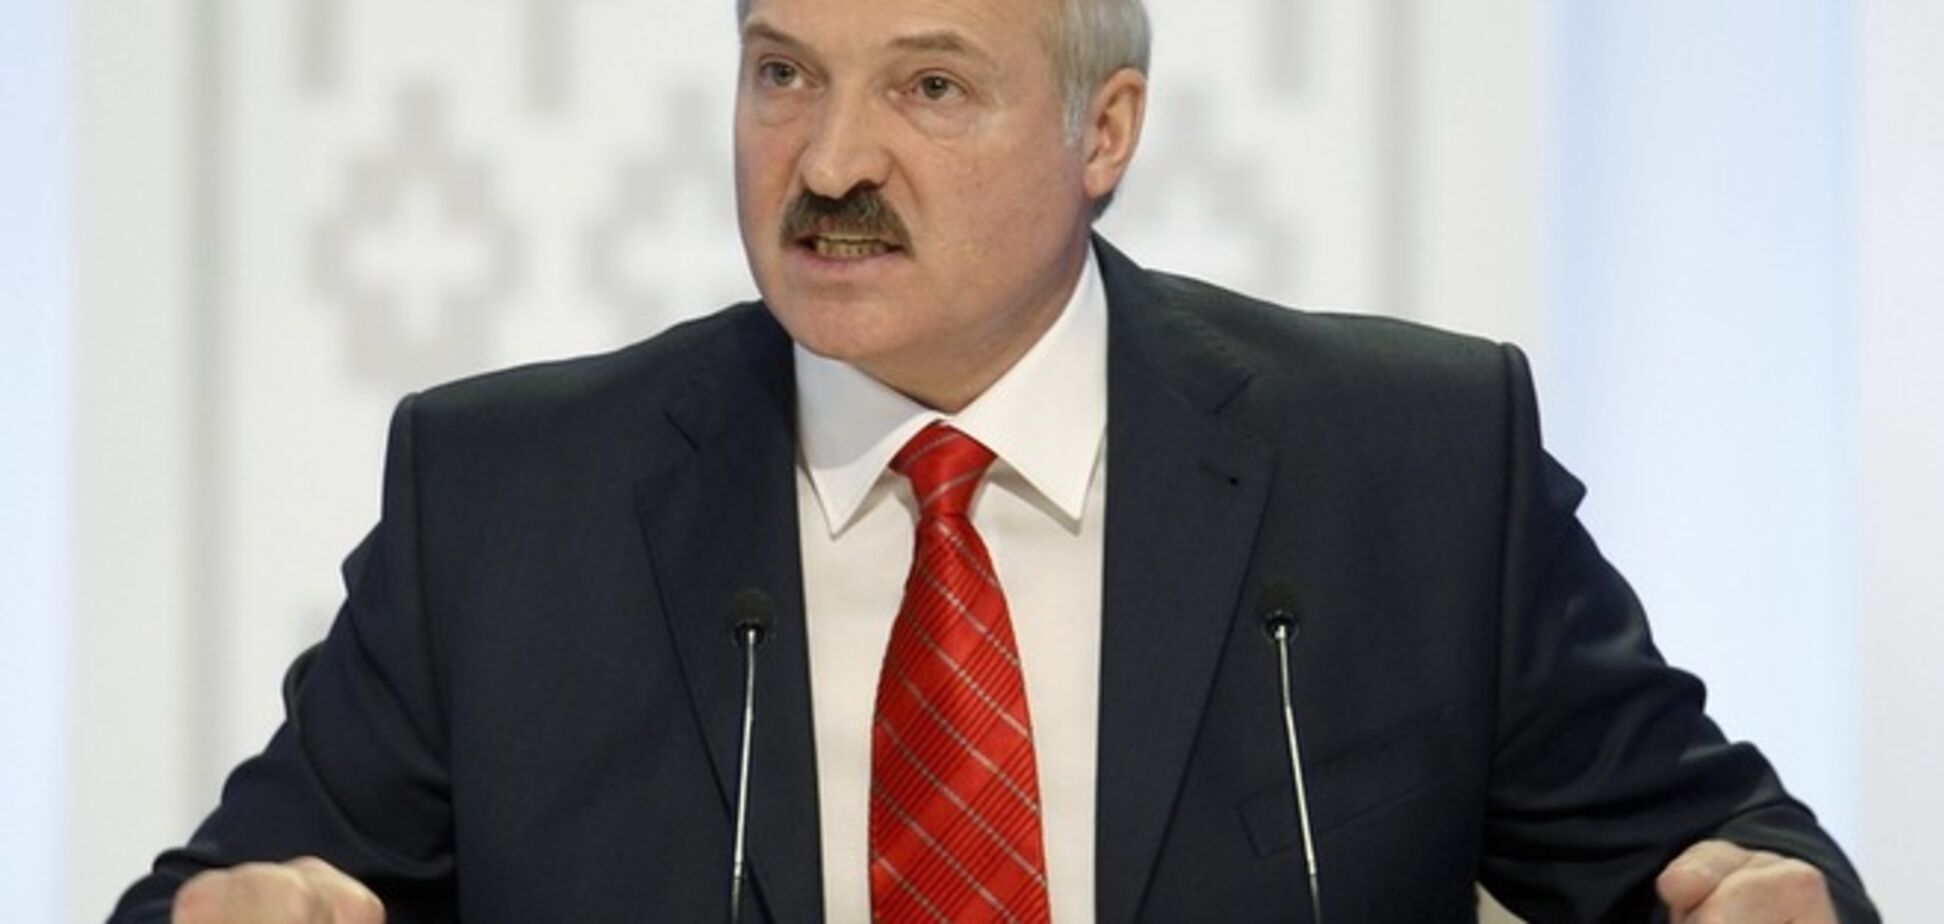 Когда нужно готовить сани, или Уроки от Лукашенко по работе с электоратом